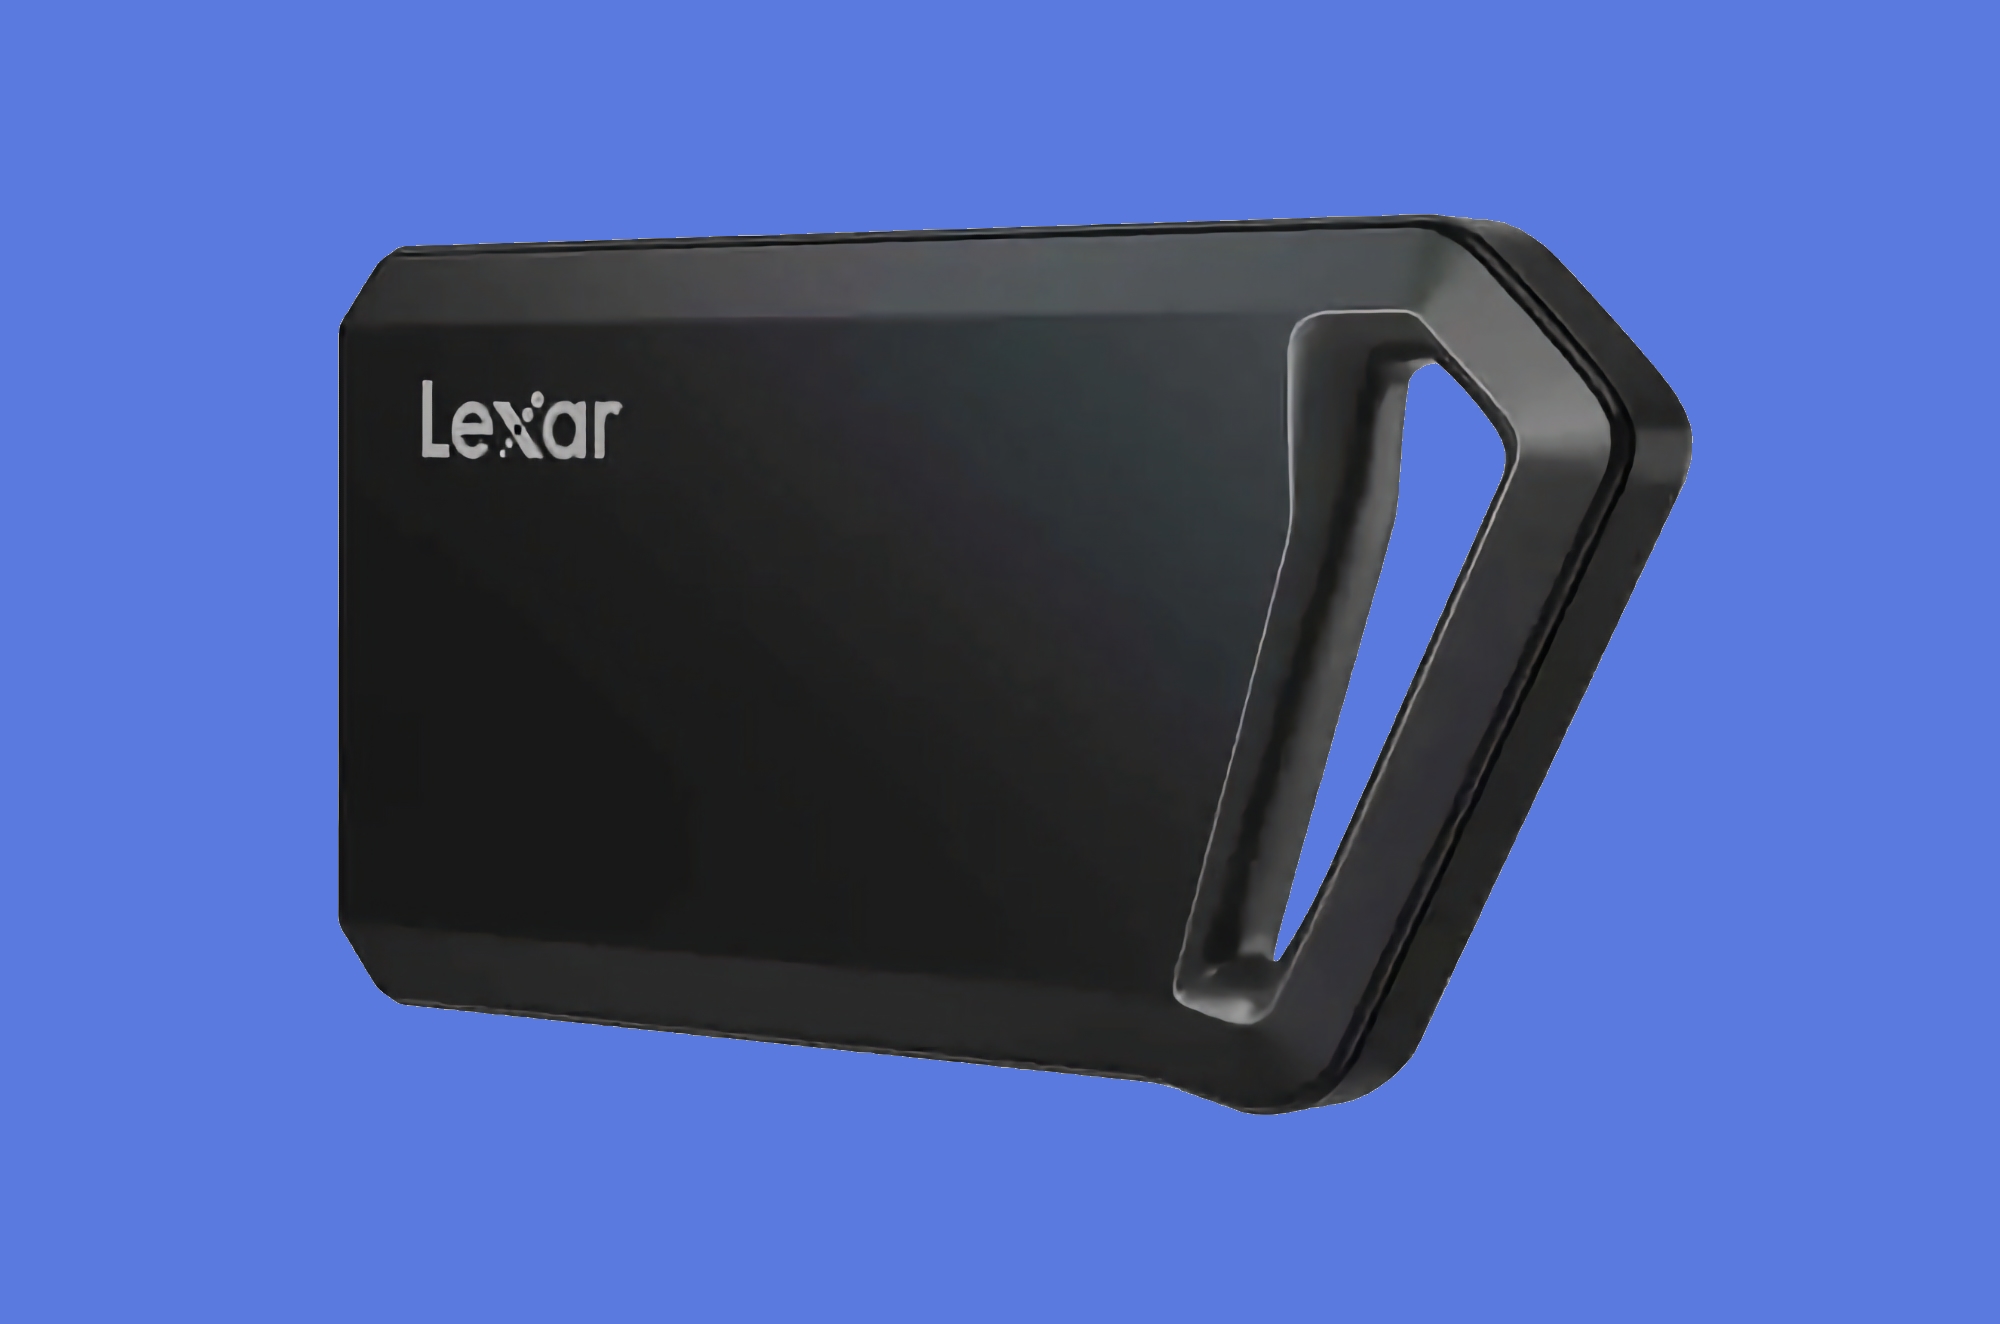 Lexar har lanserat Professional SL600 Portable SSD med stötsäkert hölje, 1-4 TB kapacitet och priser från 89 USD